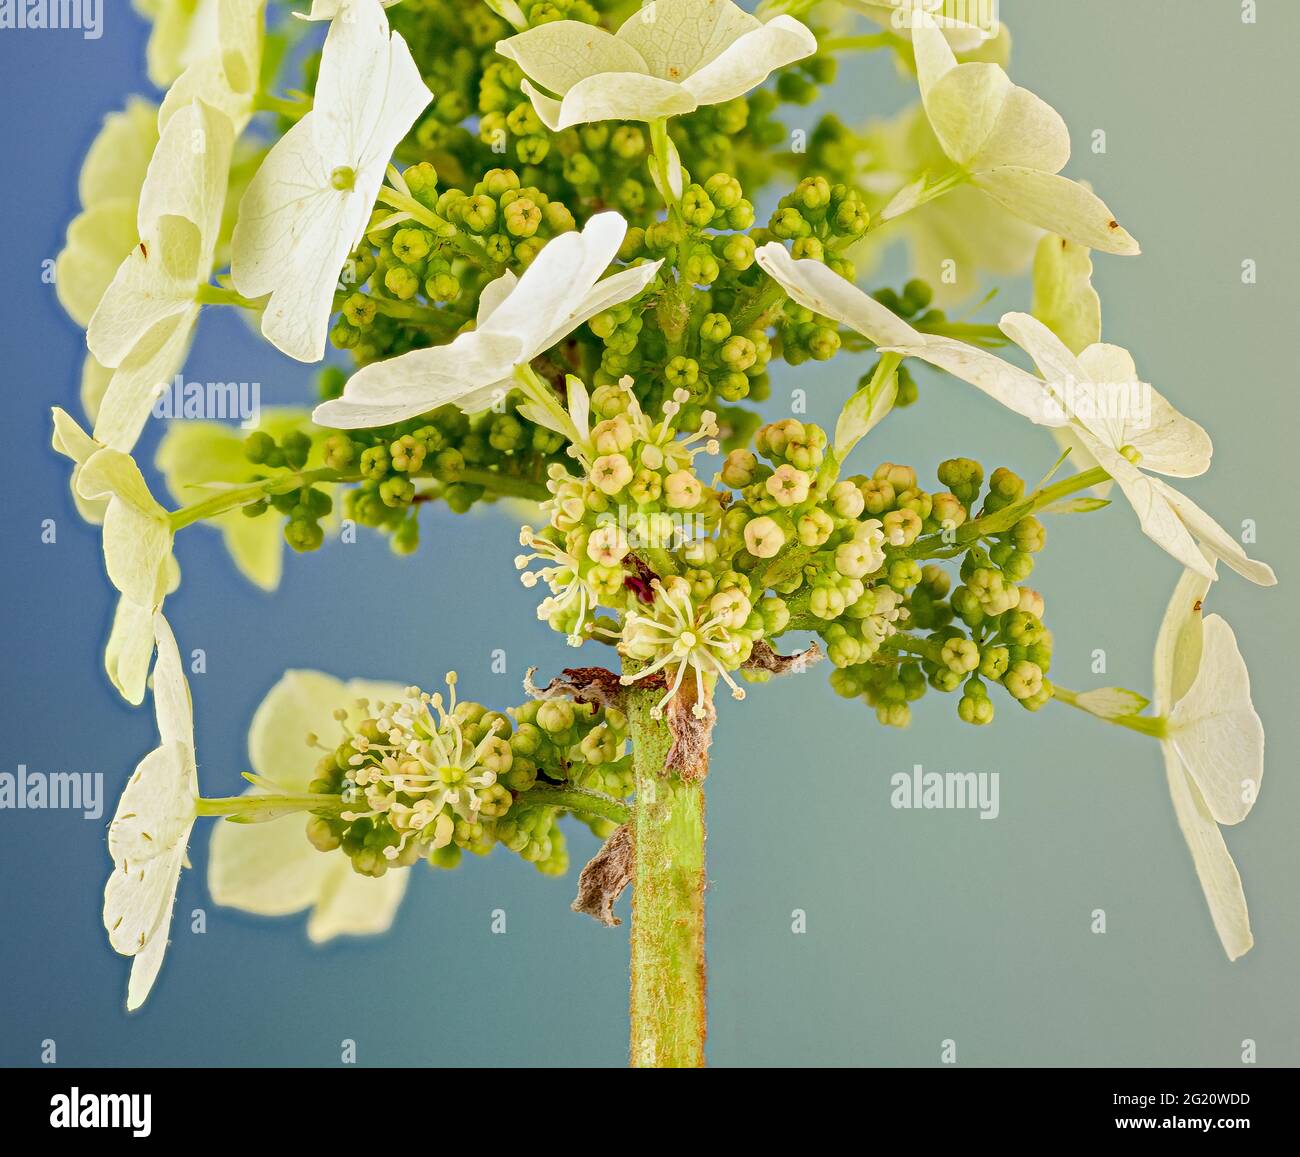 Große sterile Blüten (Kelchblätter) der Eichenlaub-Hortensien (Hydrangea quercifolia) ziehen Insekten zu den unscheinbaren fruchtbaren Blüten darunter an. Stockfoto